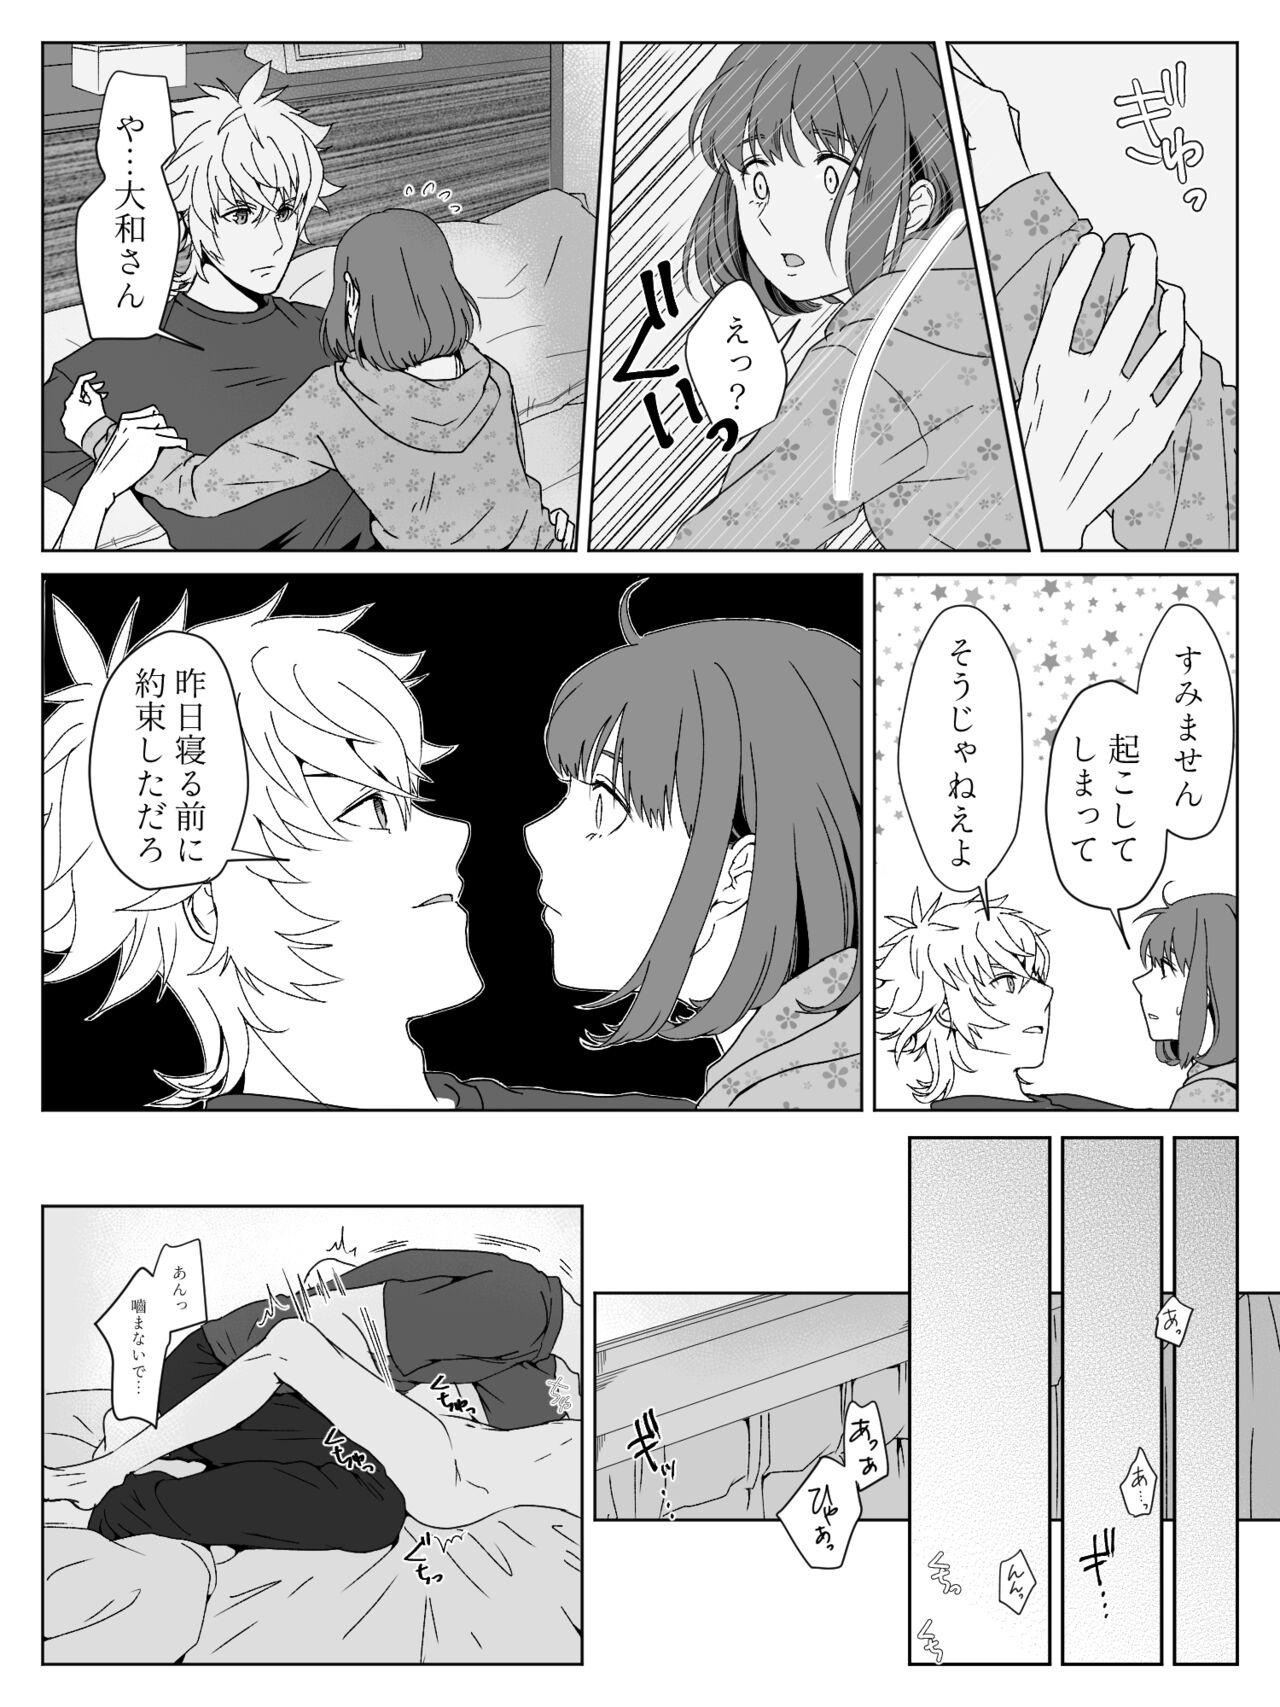 Hardcore Fuck Yamato Haru Manga - Uta no prince sama Tetas - Page 9